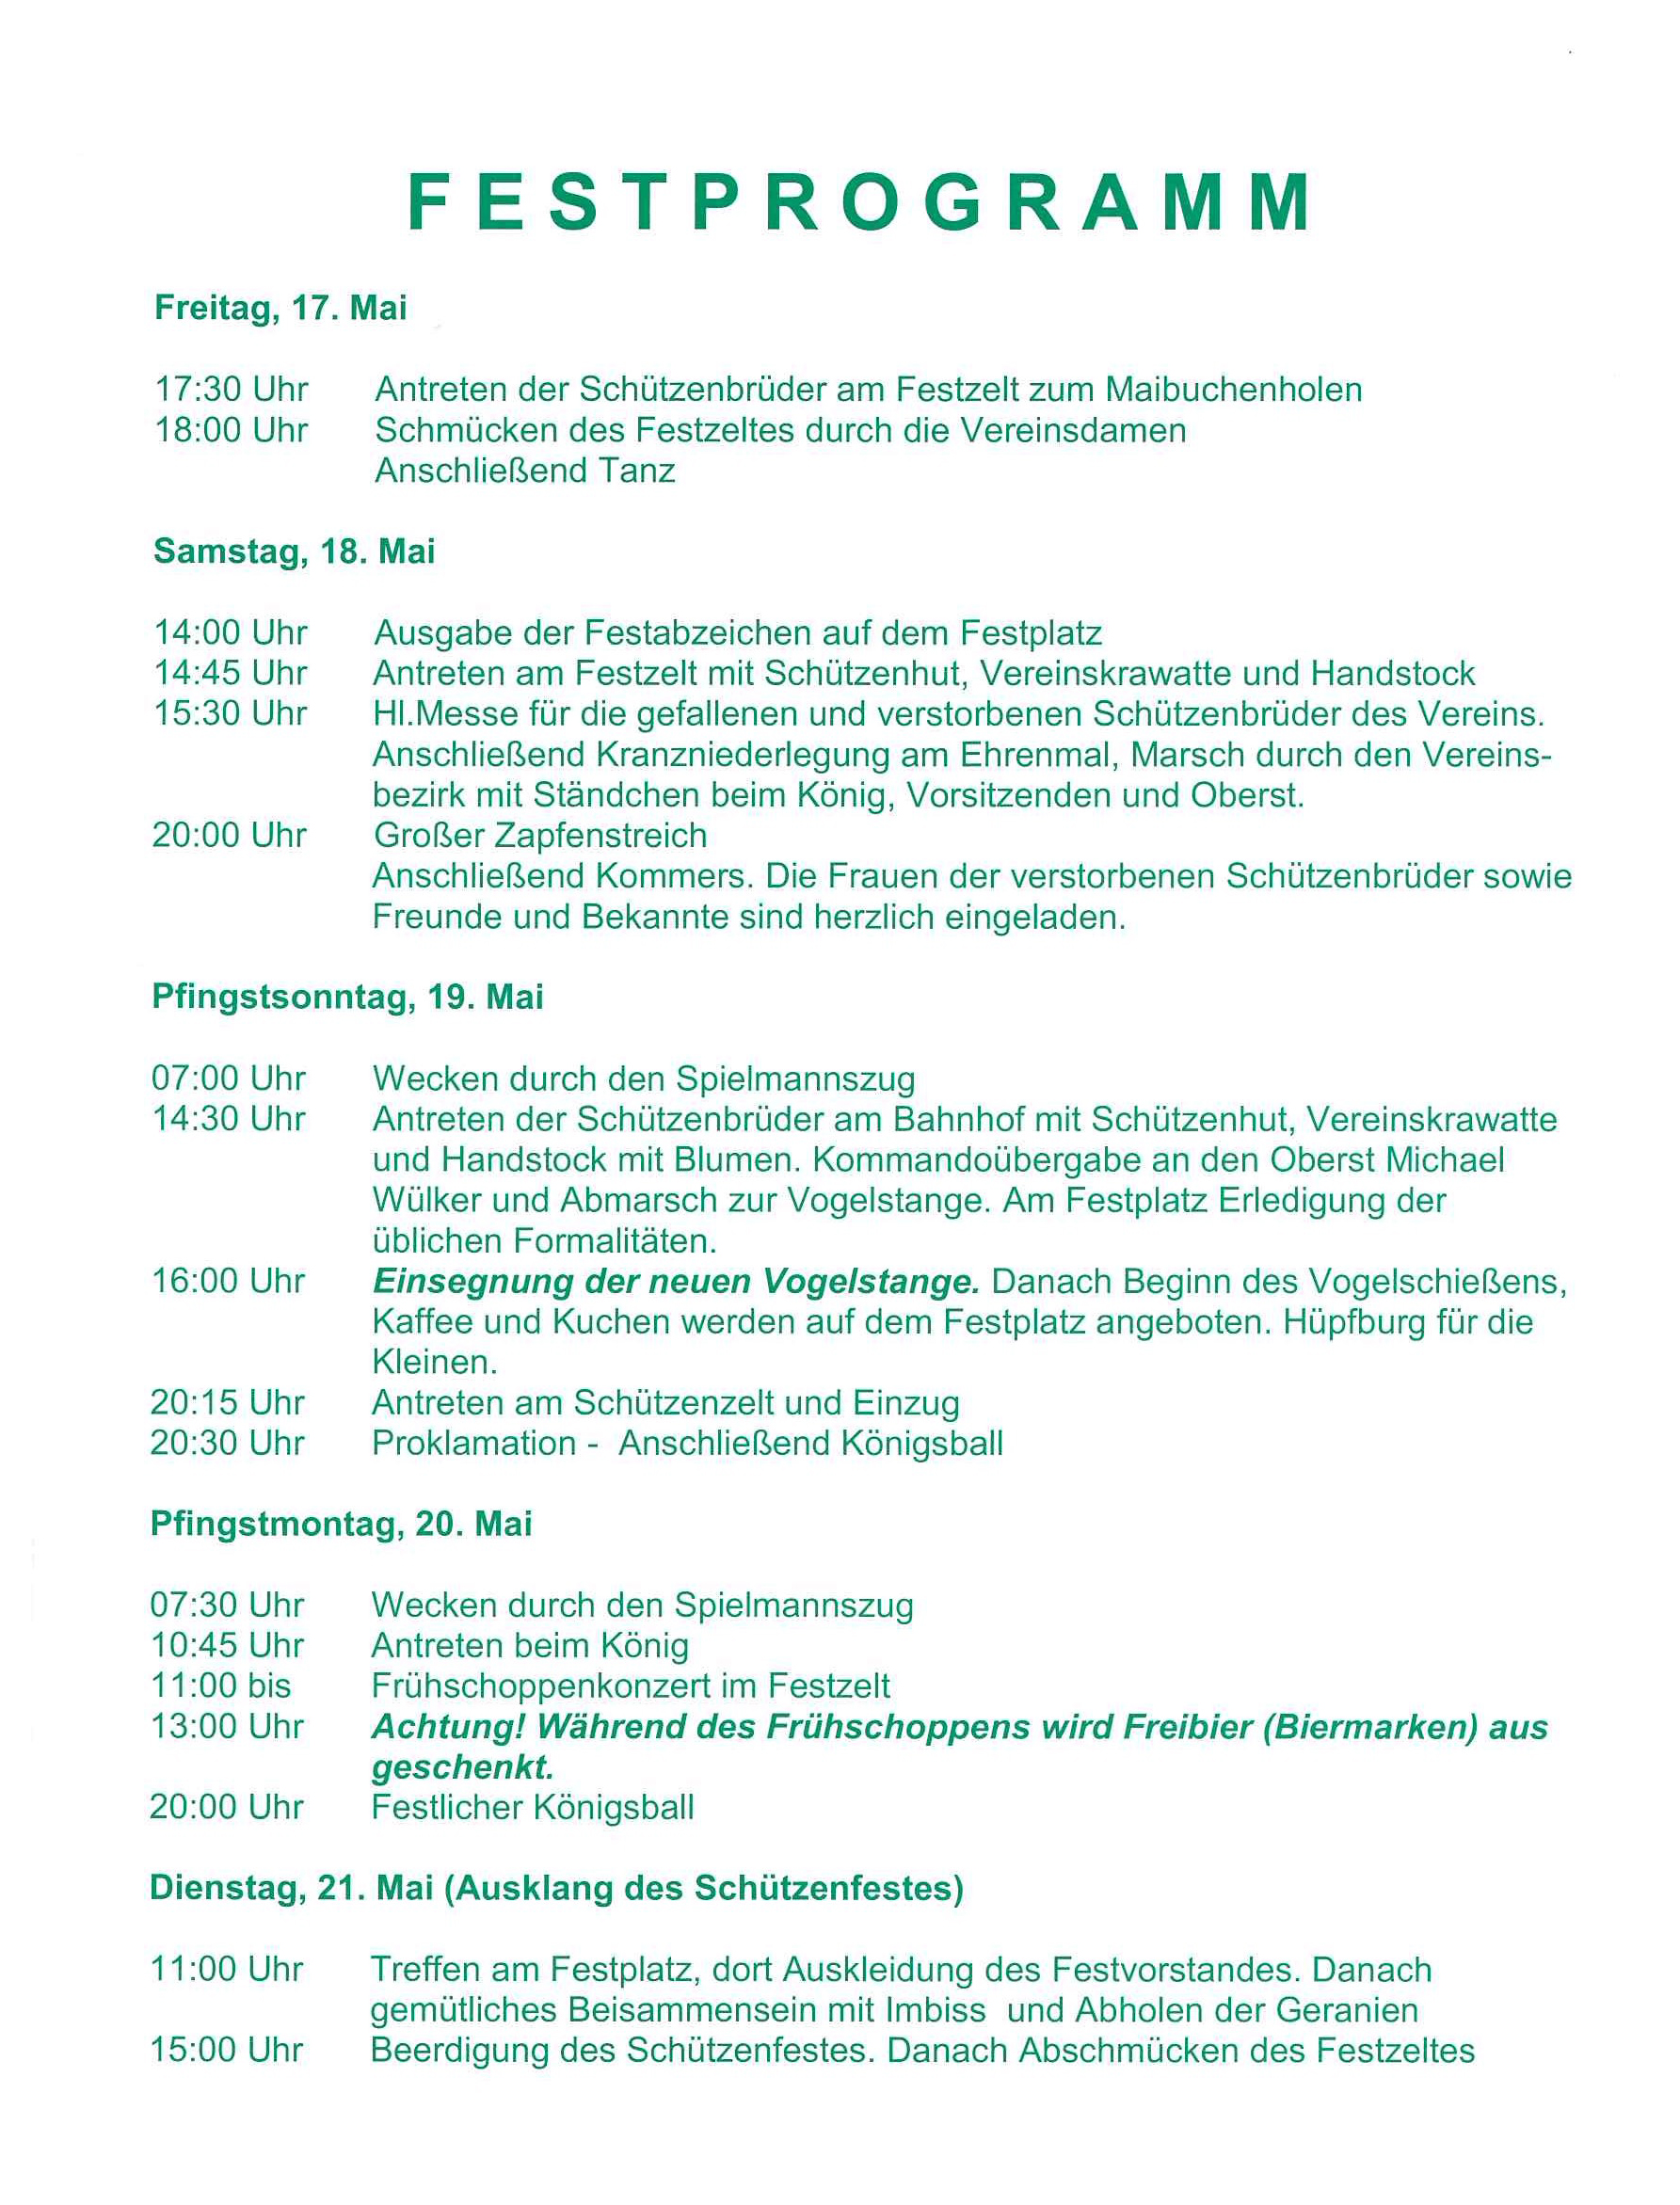 horst-und-wall-festprogramm2013